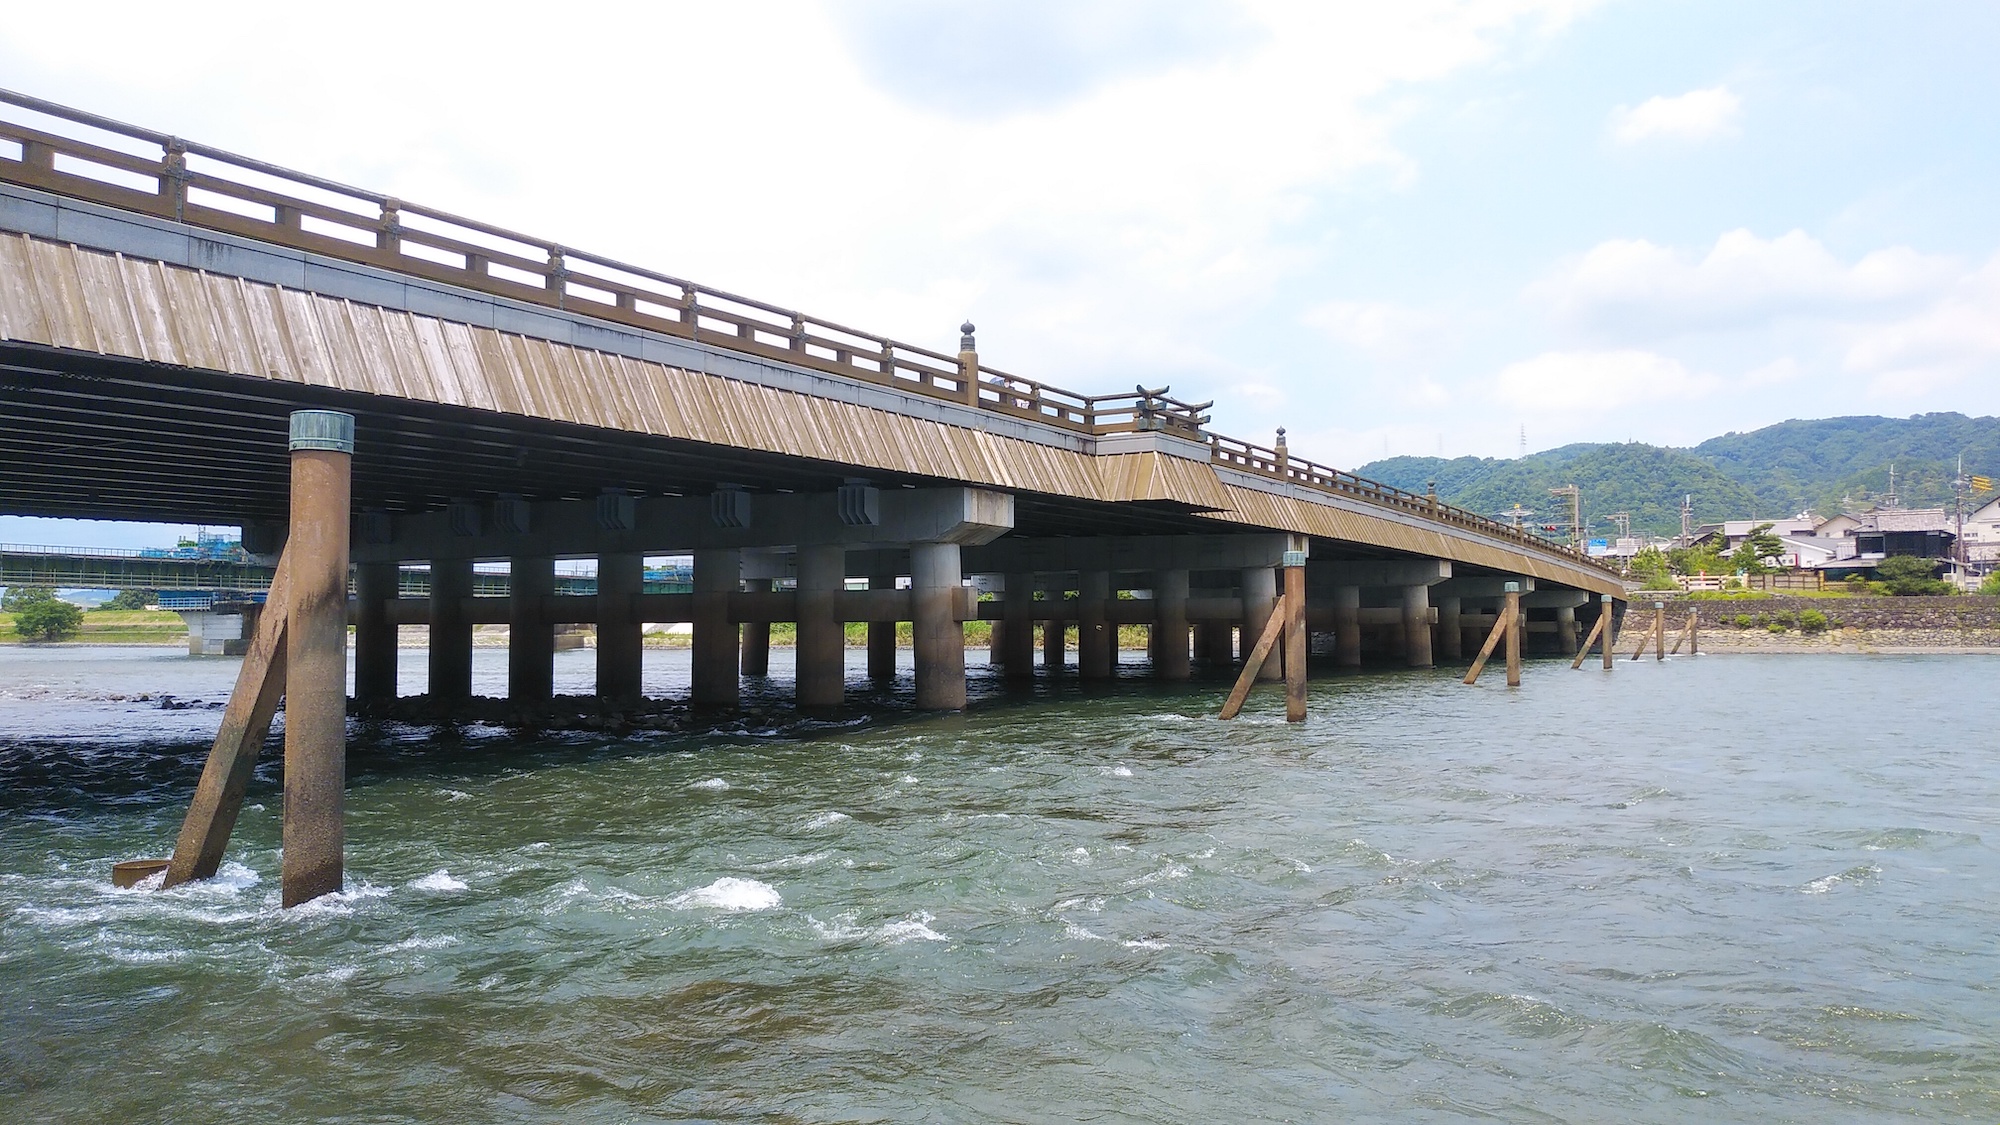 646年に初めて架けられたとされている、日本最古の橋とされている「宇治橋」。